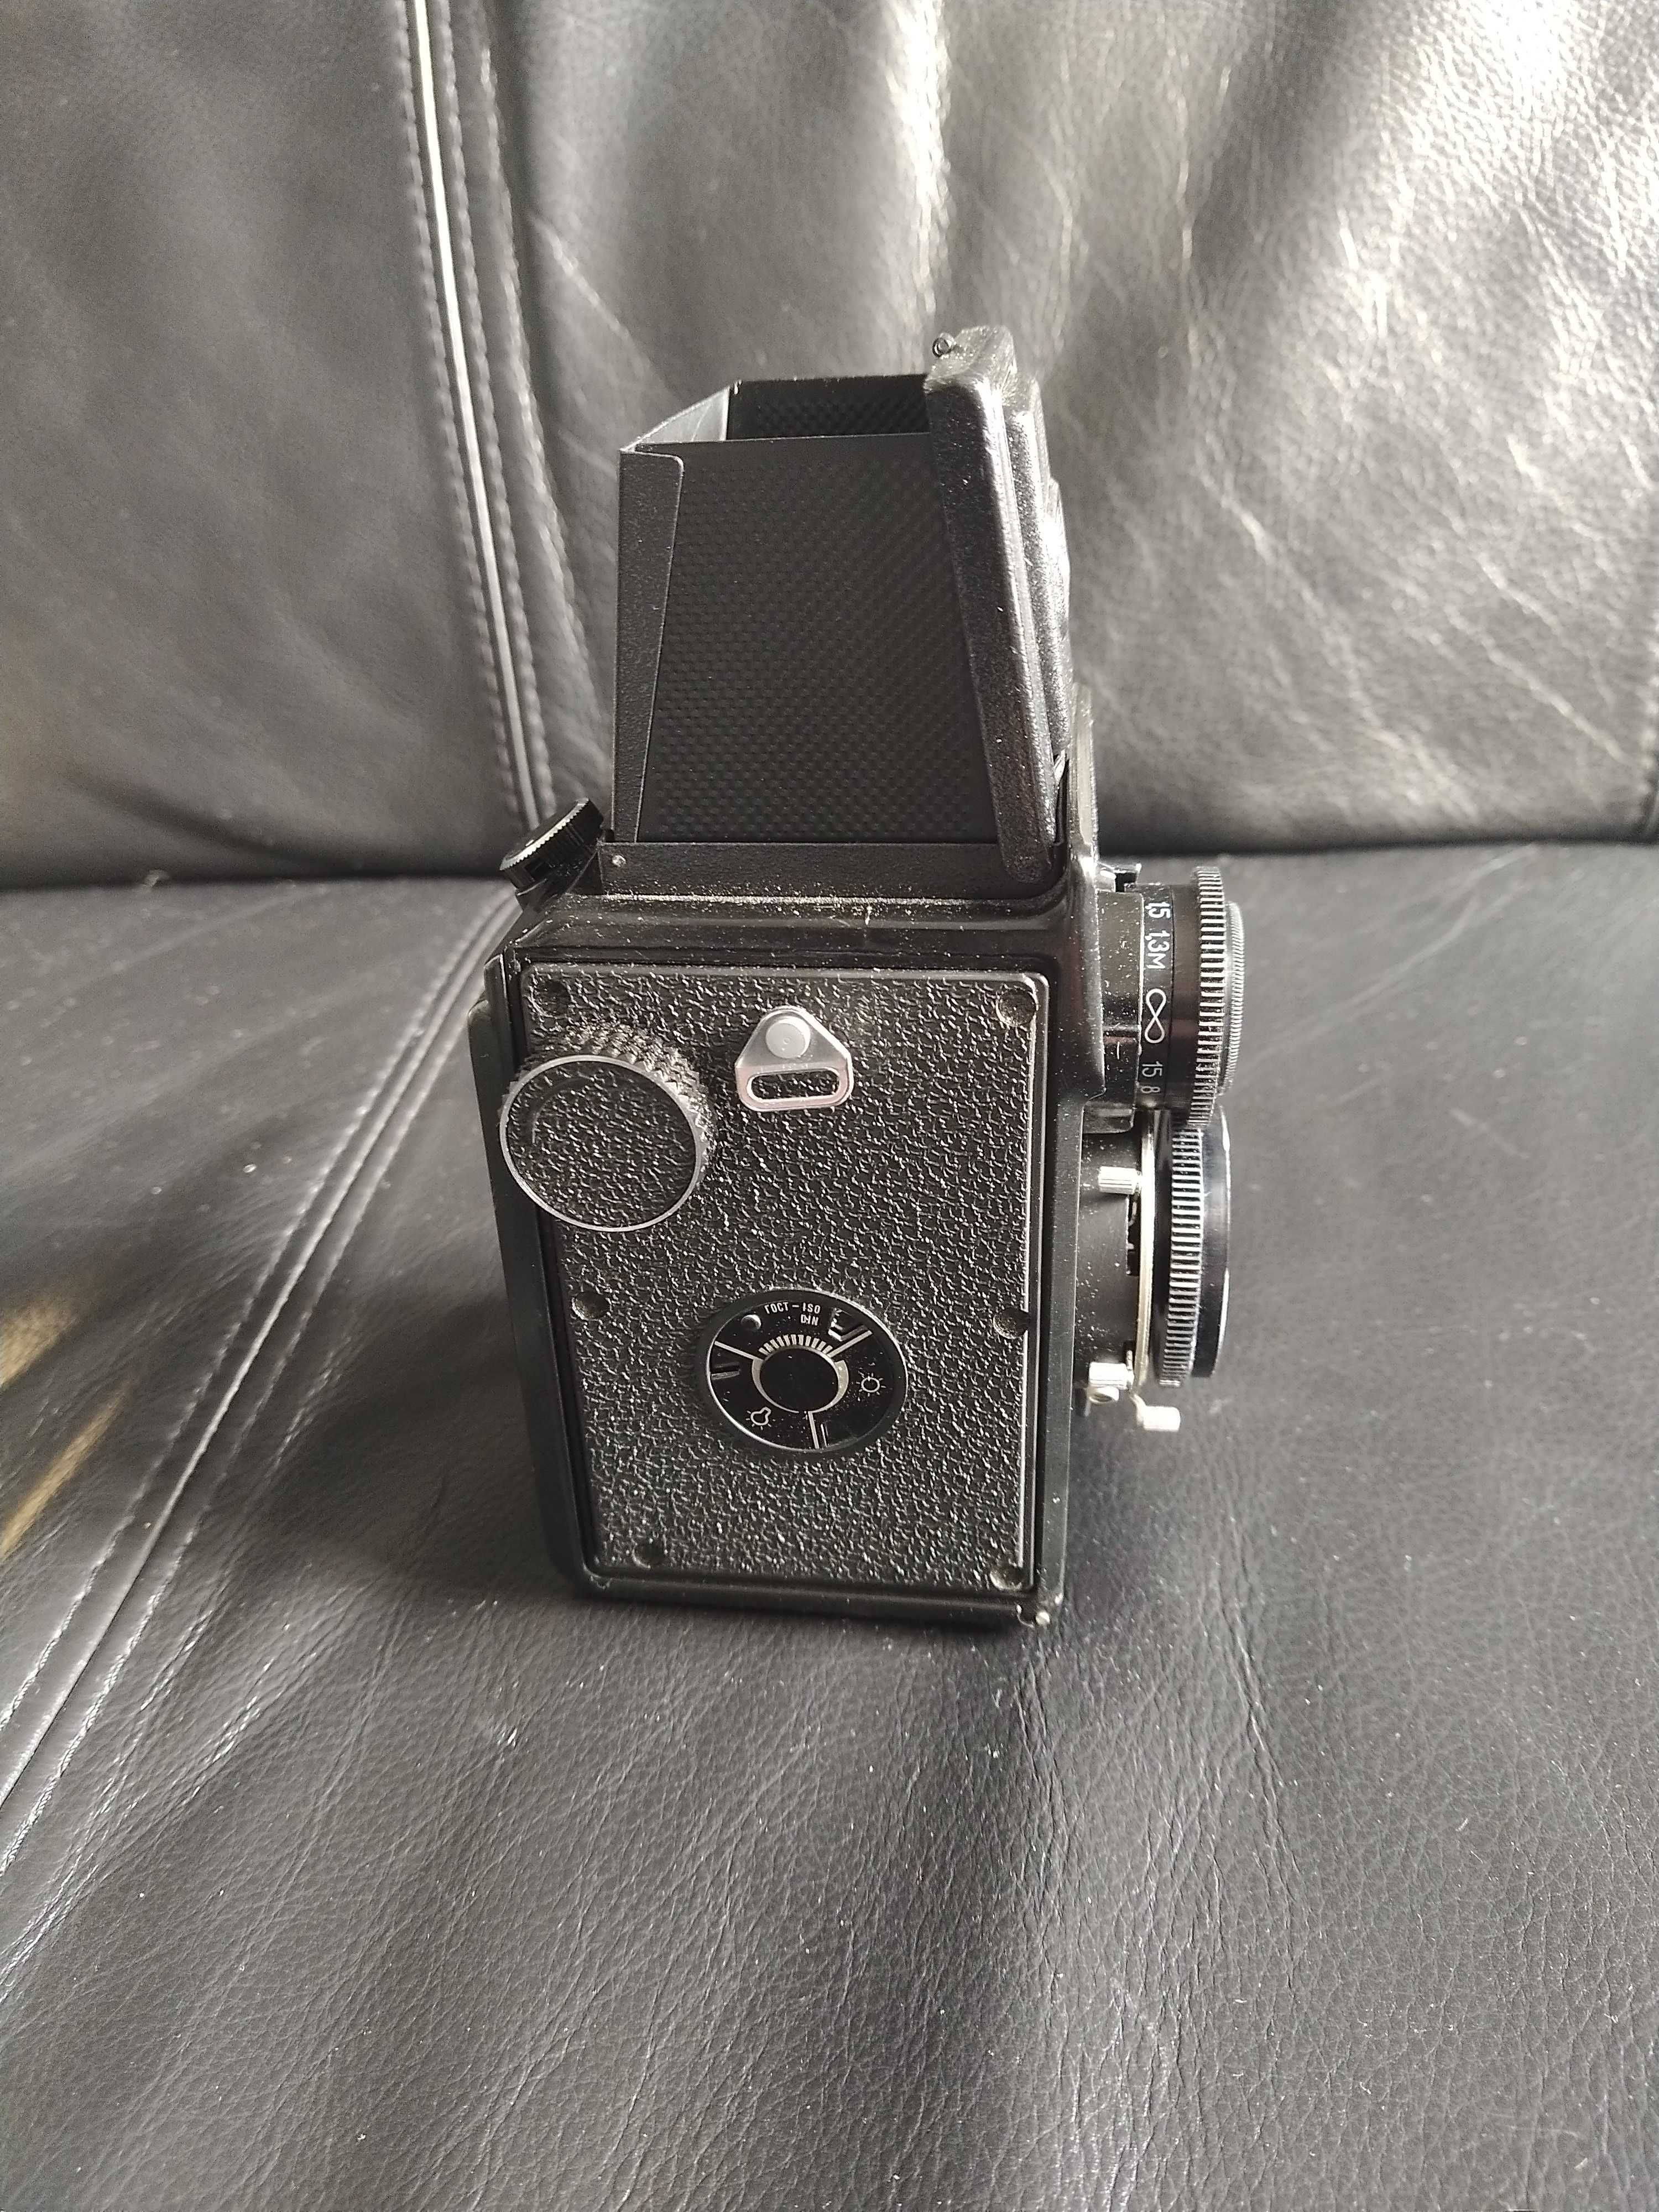 Máquina fotografica Lubitel 166. Completa com acessórios e documentos